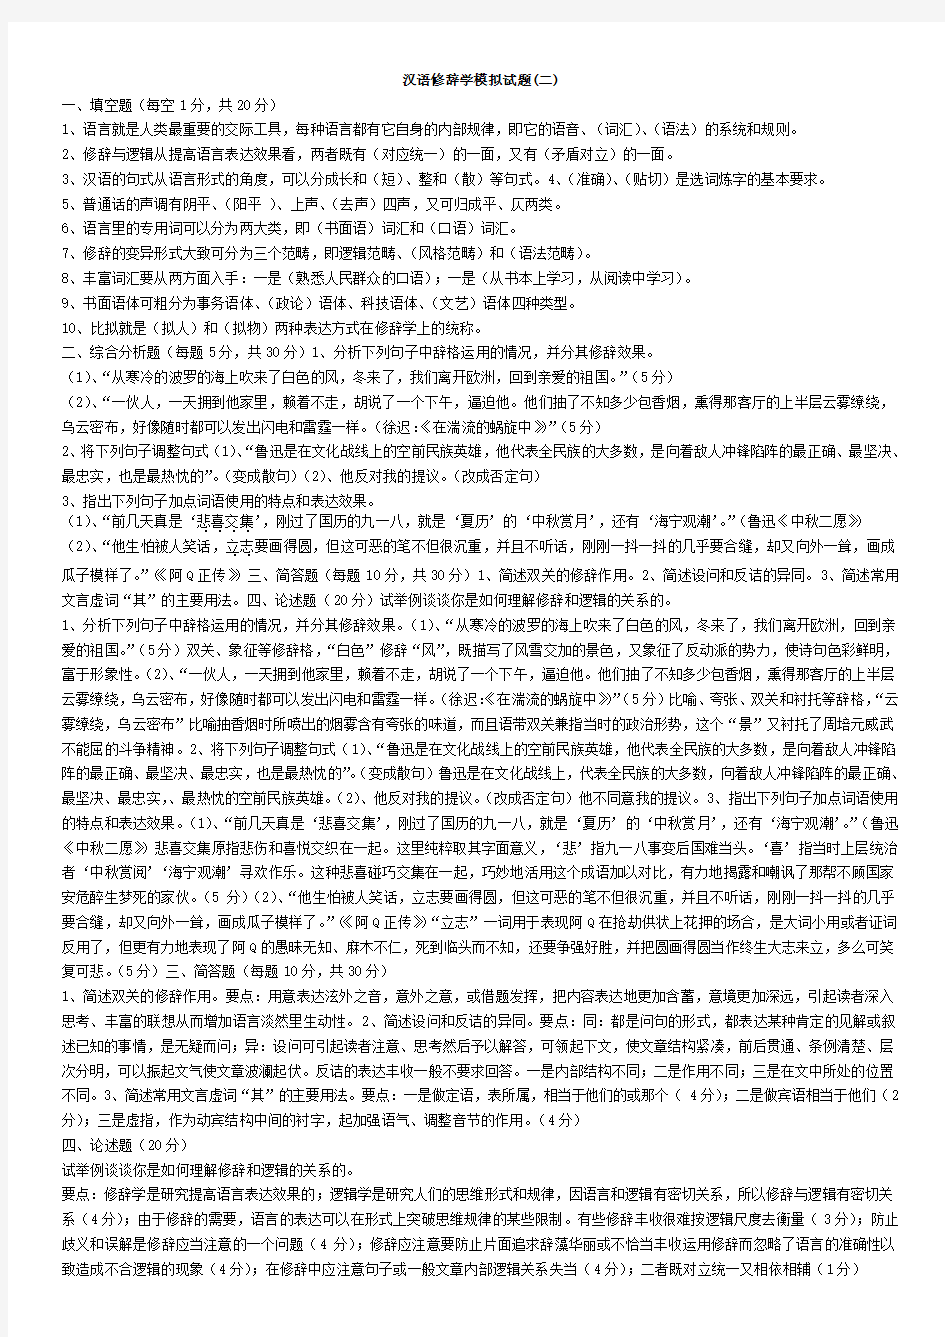 6汉语修辞学模拟试题(二)及答案